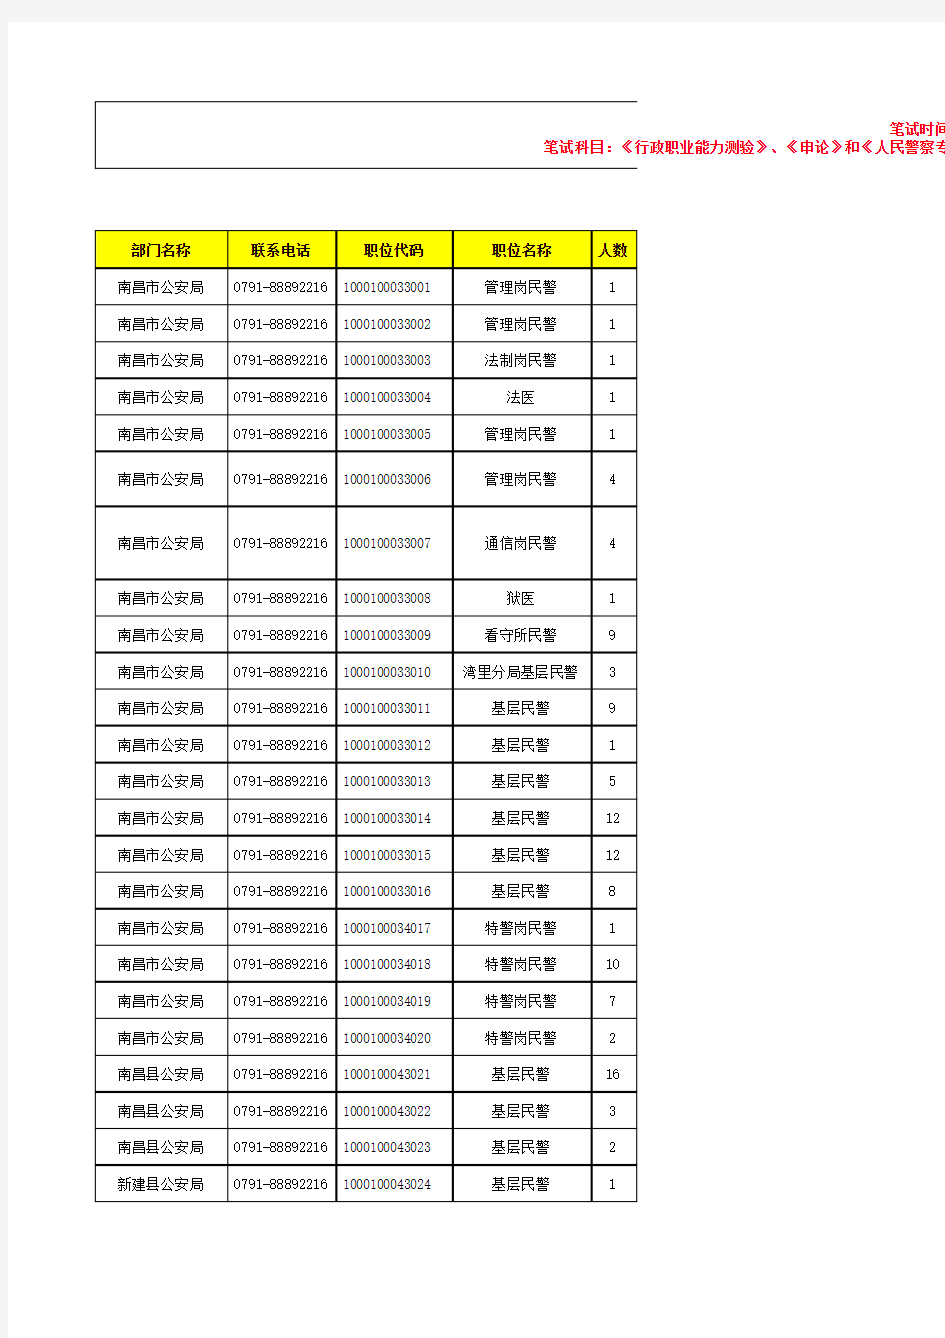 江西省公安机关2015年度统一考试录用人民警察职位表